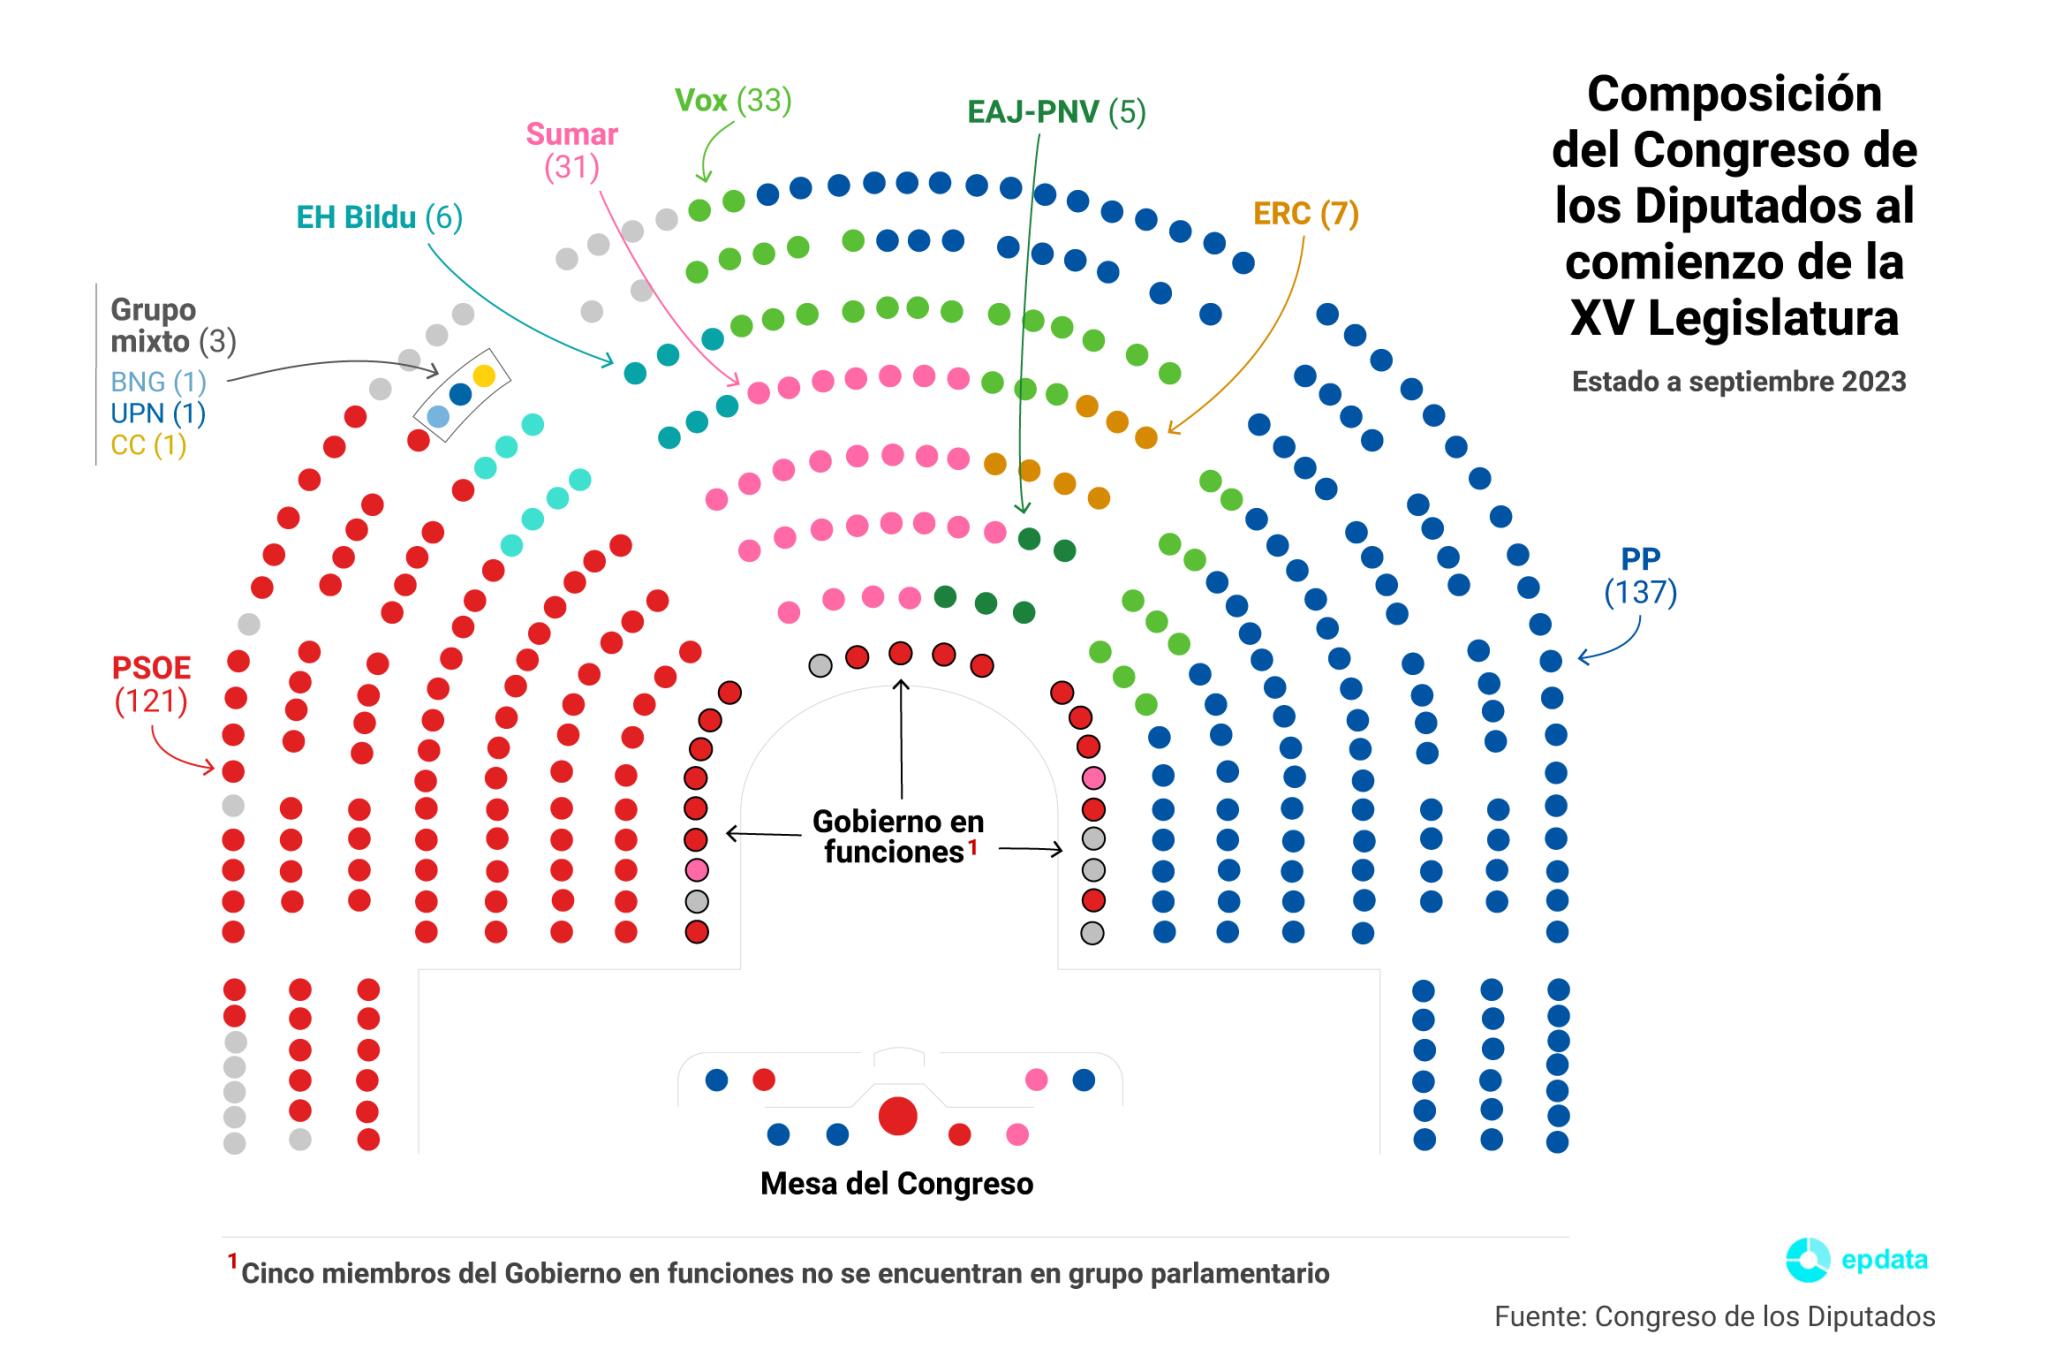 Grupos parlamentarios en el Congreso de los Diputados en la Legislatura XV. epdata.